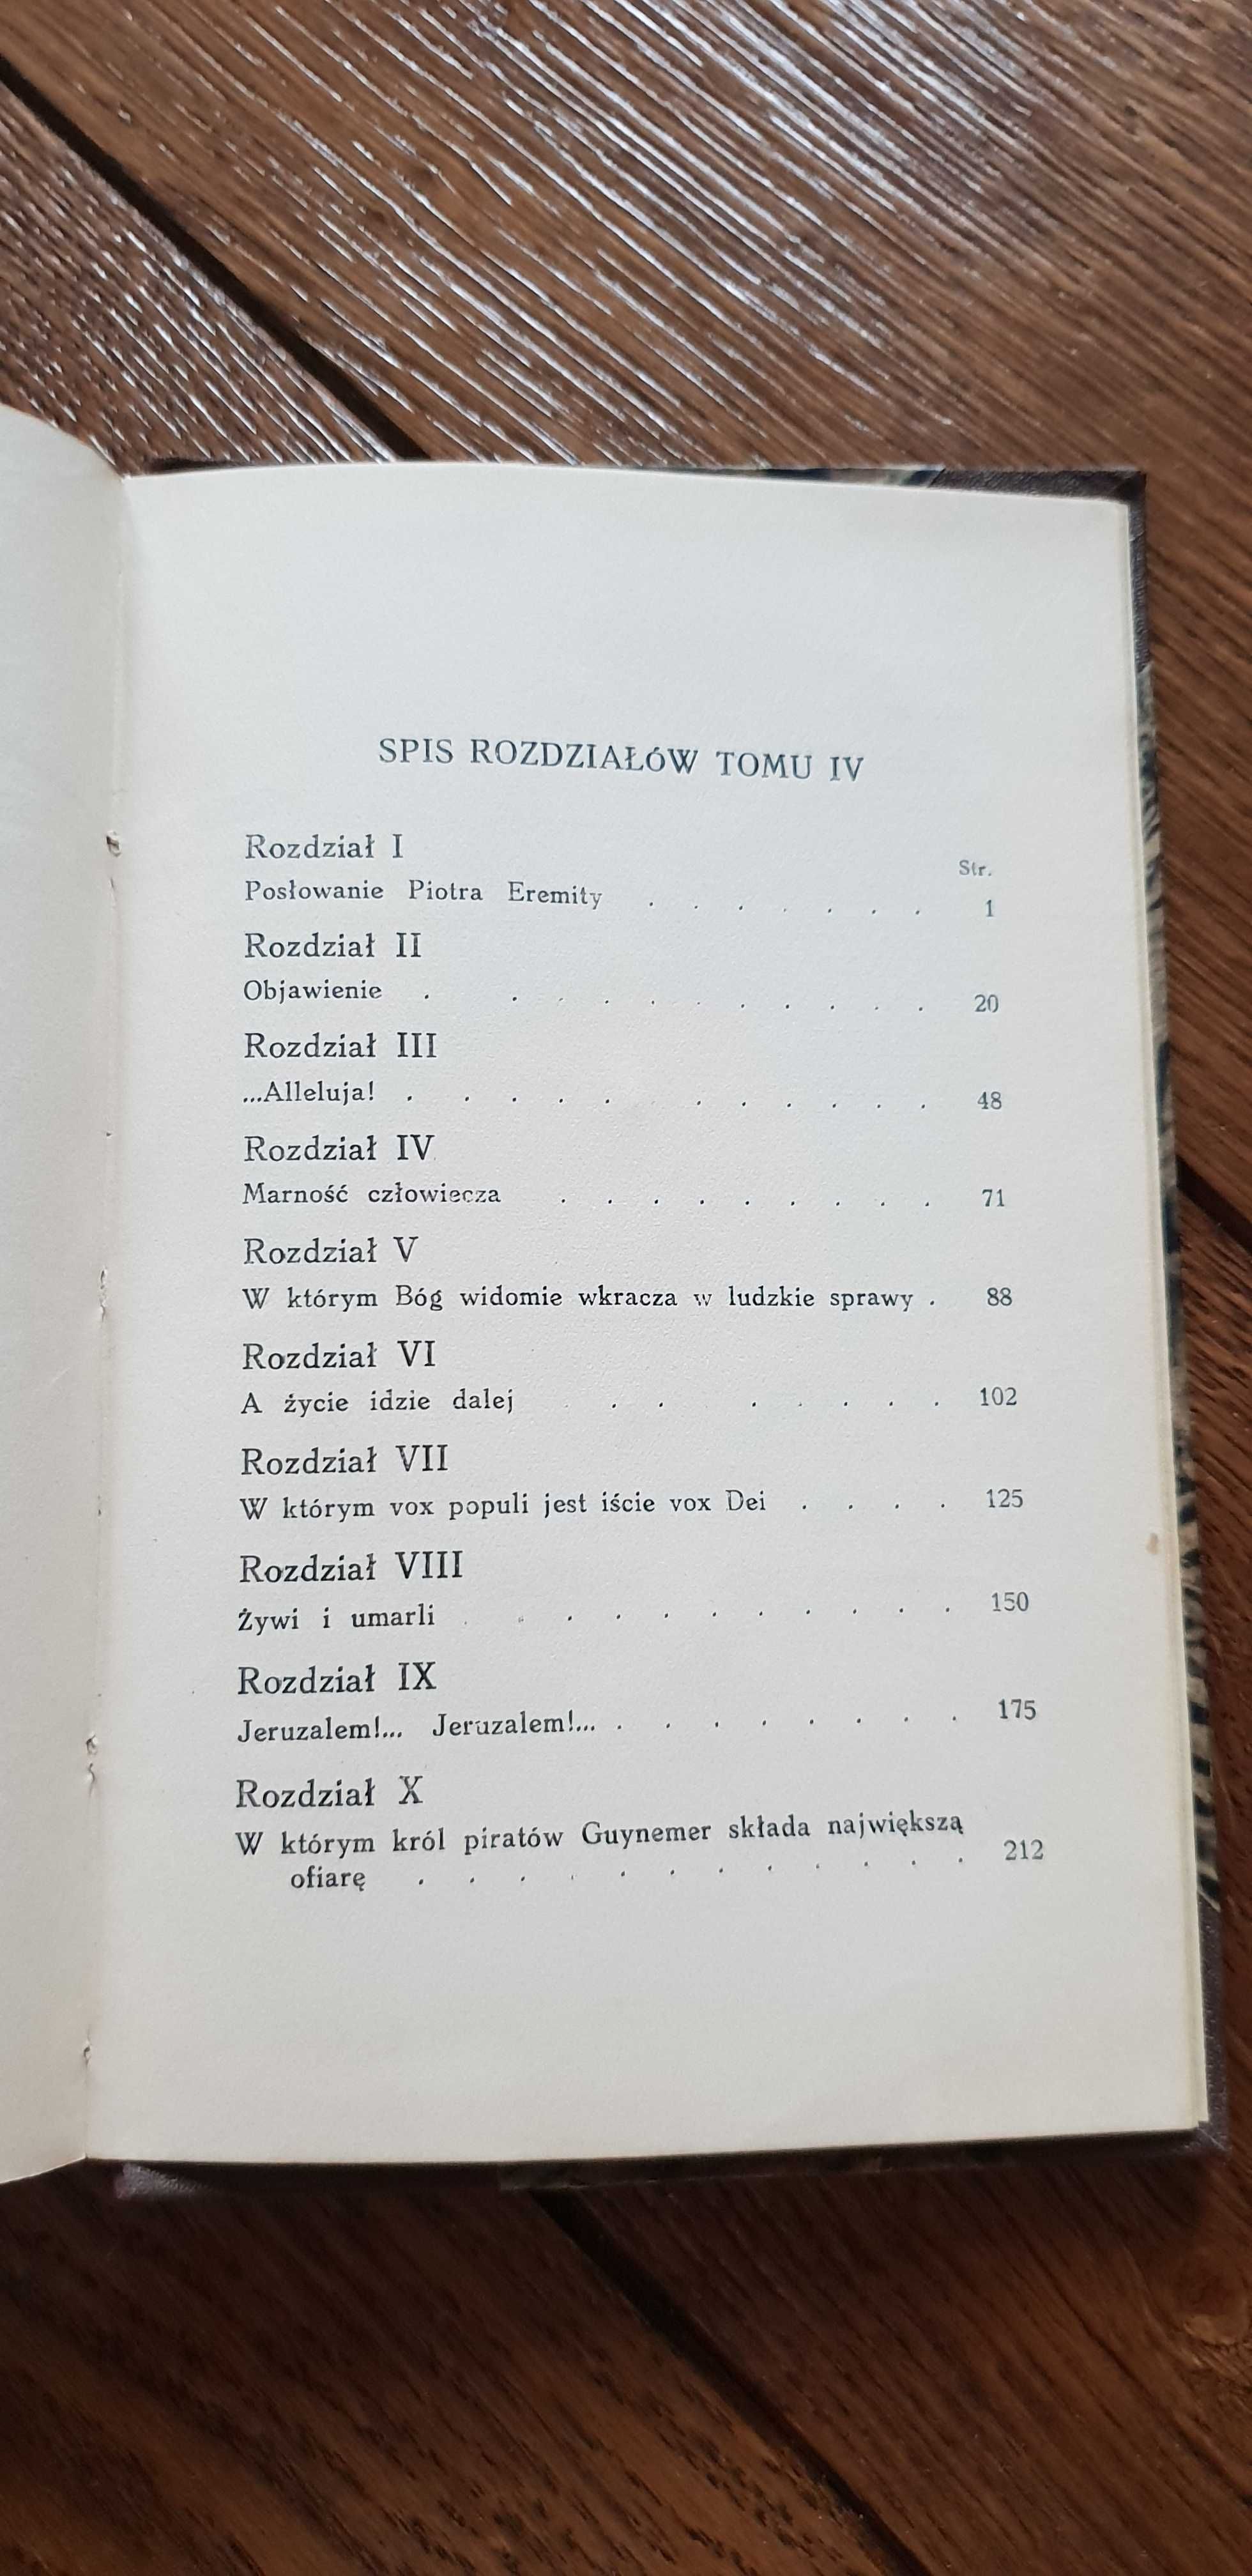 Książka rok 1939 "Krzyżowcy" Zofia Kossak - tom IV